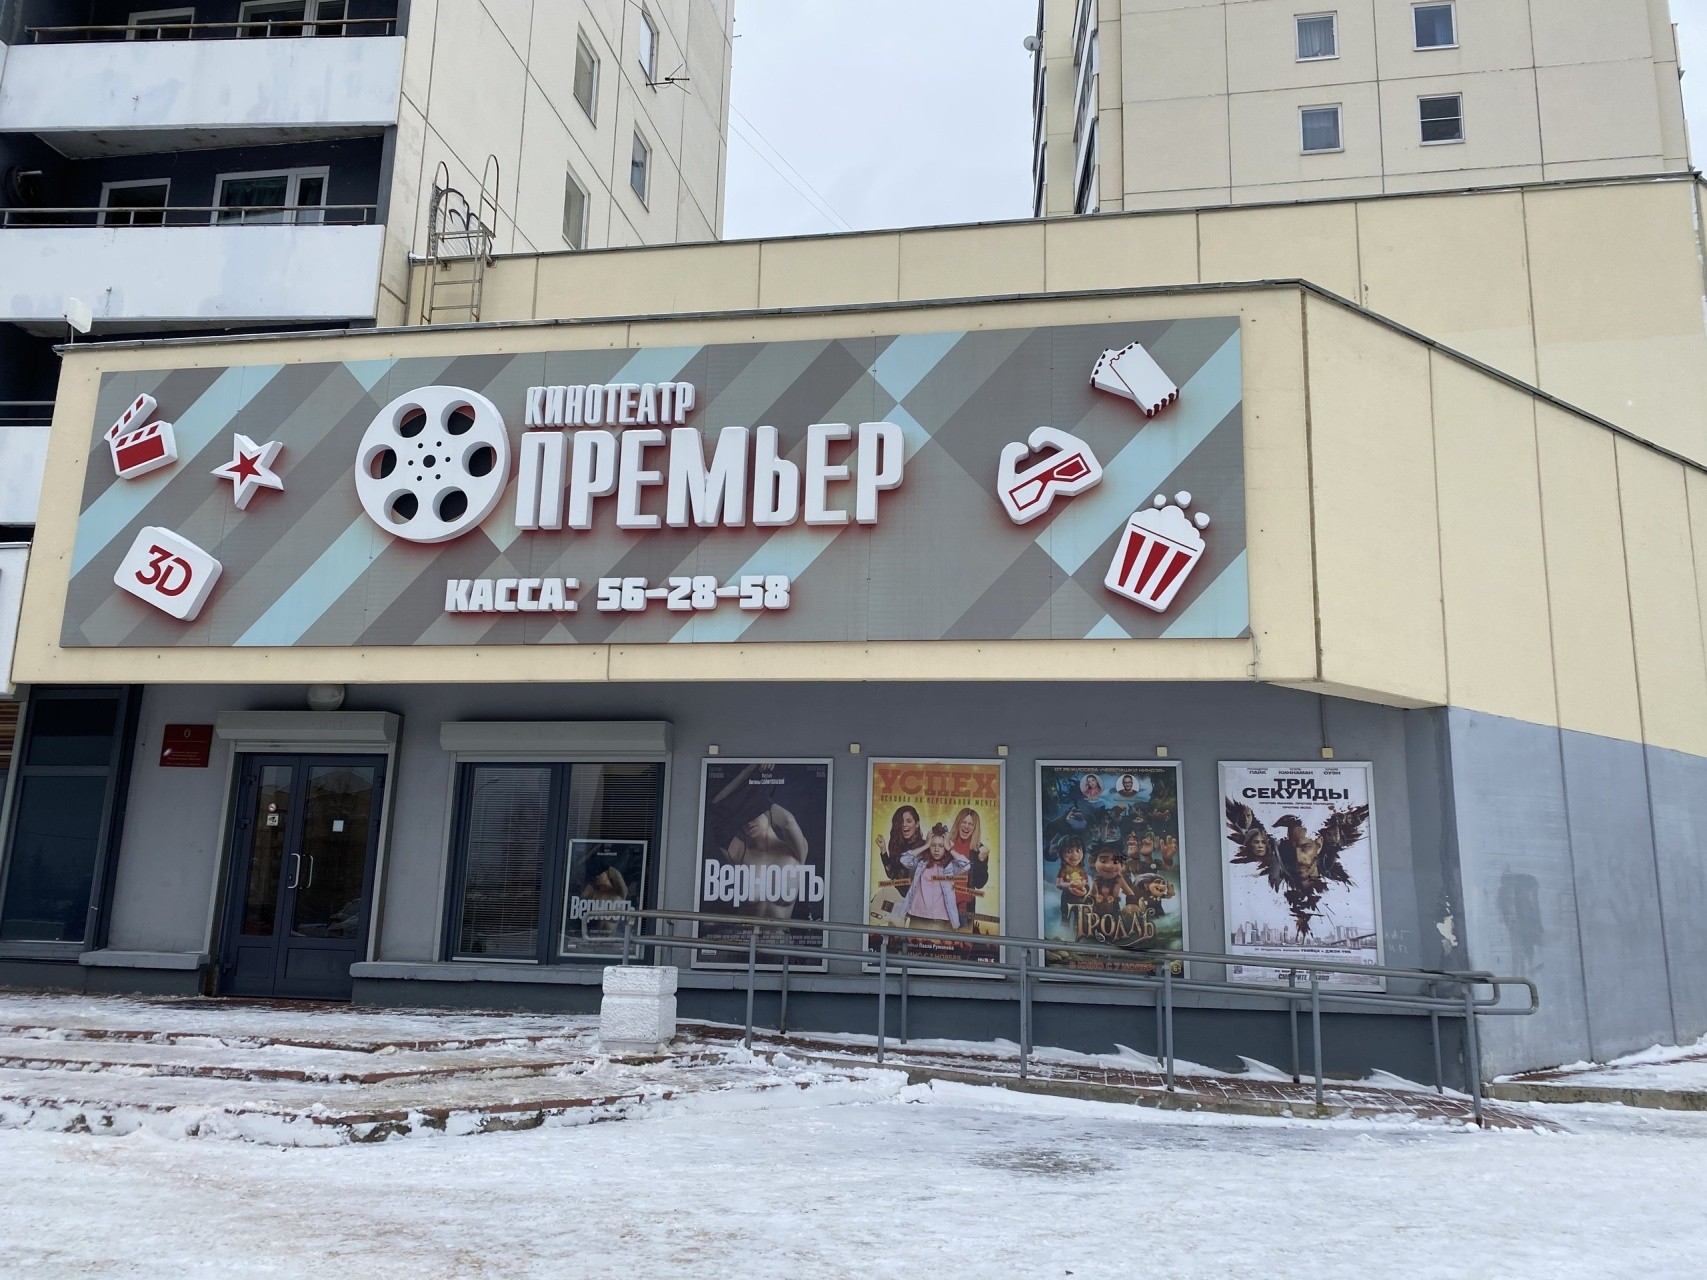 Elokuvanäytökset järjestetään Premjer-elokuvateatterissa 10. helmikuuta. 16+. Kuva: Premjer-elokuvateatterin VKontakte-sivu